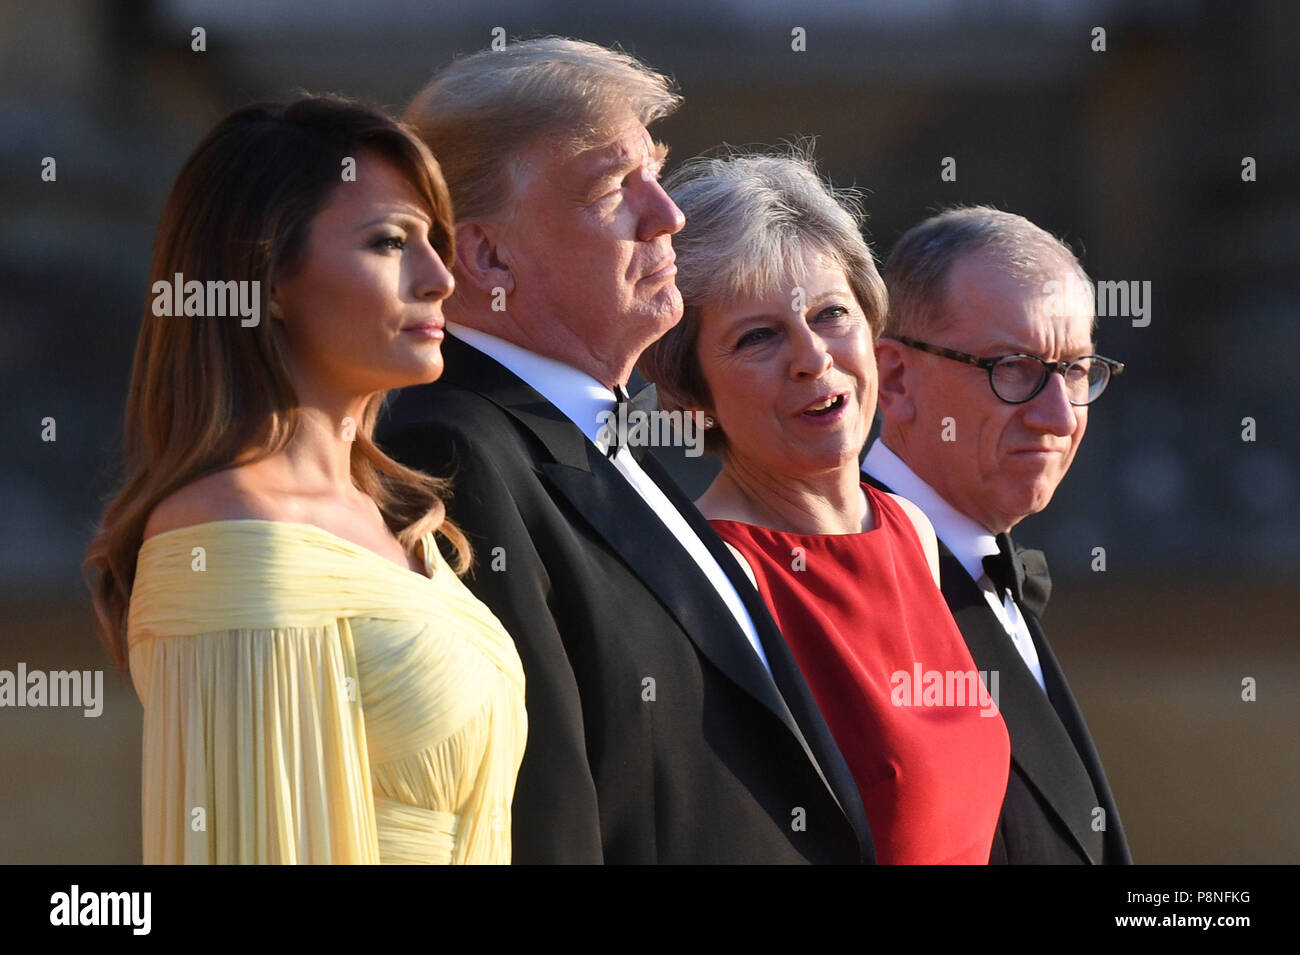 US-Präsident Donald Trump und First Lady der USA Melania Trump stand mit Premierminister Theresa May und ihr Ehemann Philip kann bei Blenheim Palace, Oxfordshire, vor ein Abendessen als Teil seines Besuchs in Großbritannien. Stockfoto